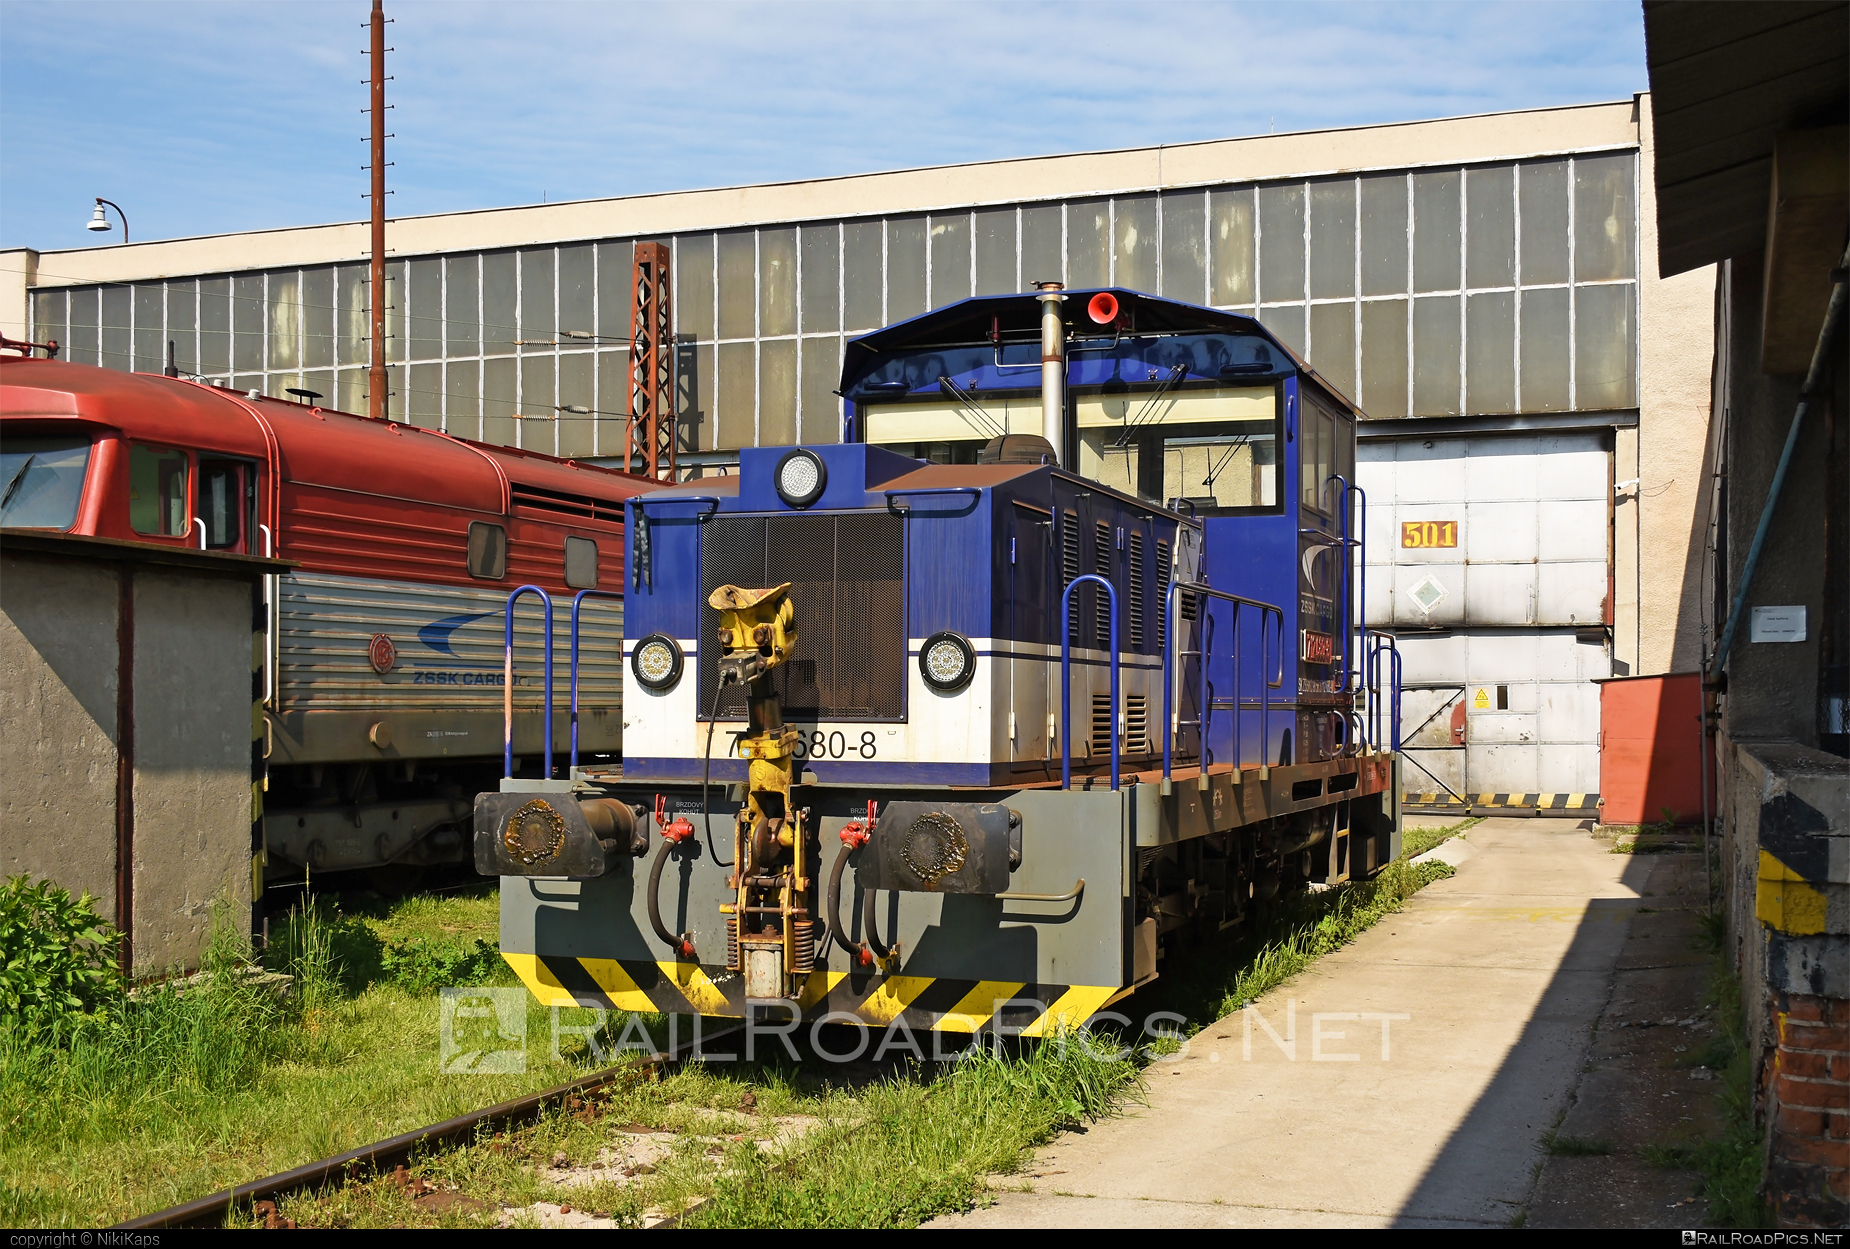 ŽOS Zvolen Class 712 - 712 680-8 operated by Železničná Spoločnost' Cargo Slovakia a.s. #ZeleznicnaSpolocnostCargoSlovakia #locomotive712 #zoszvolen #zoszvolen712 #zsskcargo